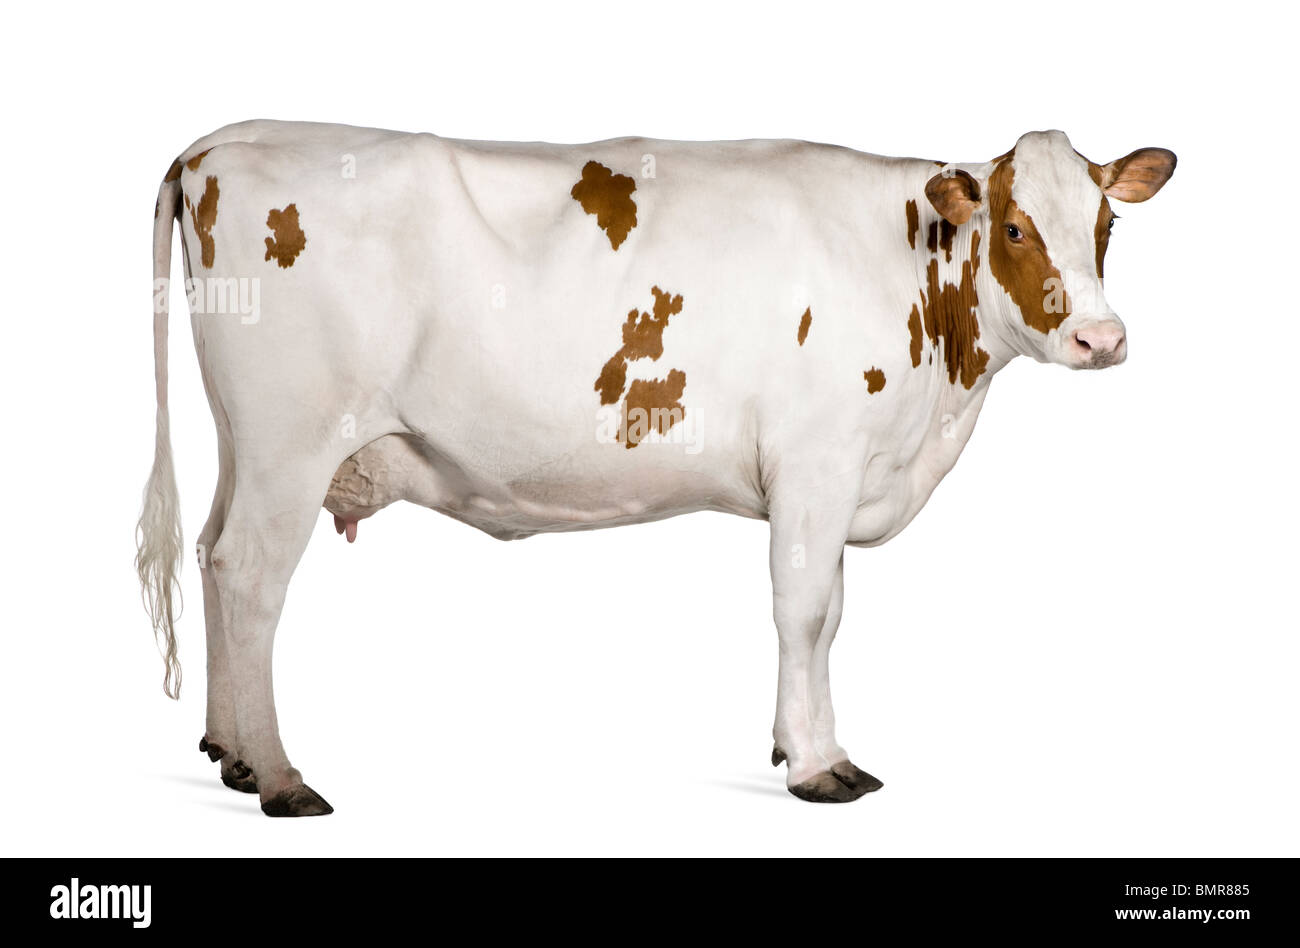 La vaca Holstein, de 4 años, estando en contra de fondo blanco. Foto de stock